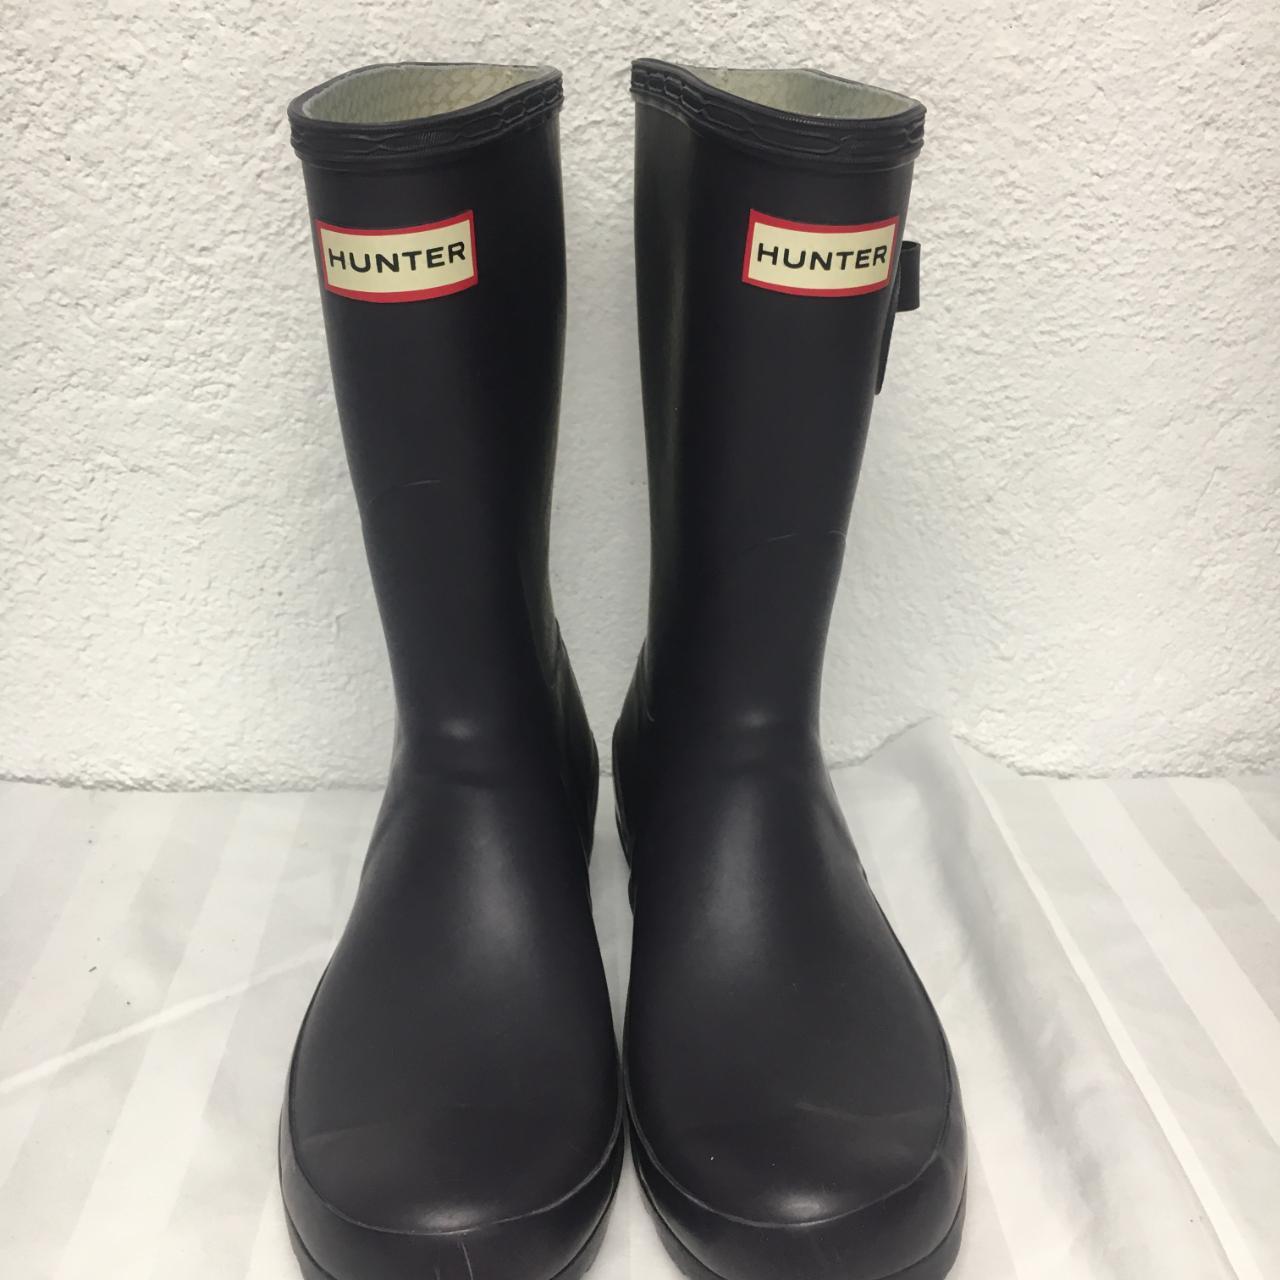 Hunter Women's Tall Rain Boots Dark Purple Size... - Depop